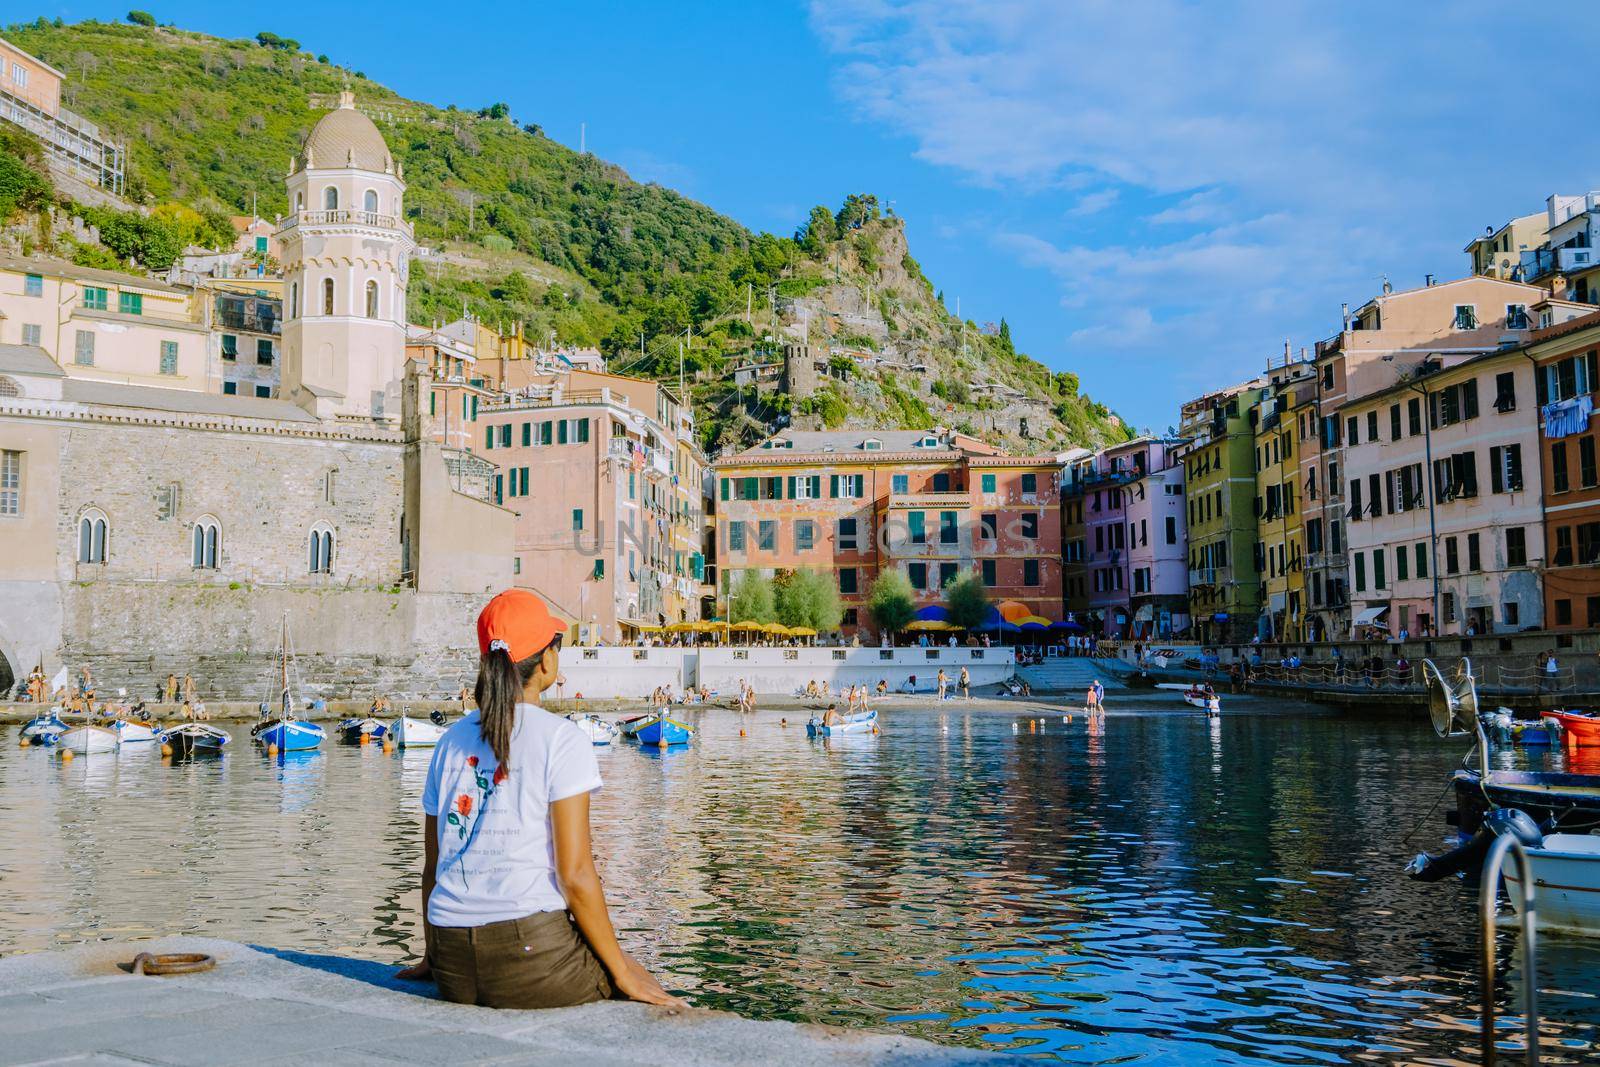 Picturesque coastal village of Vernazza, Cinque Terre, Italy. by fokkebok